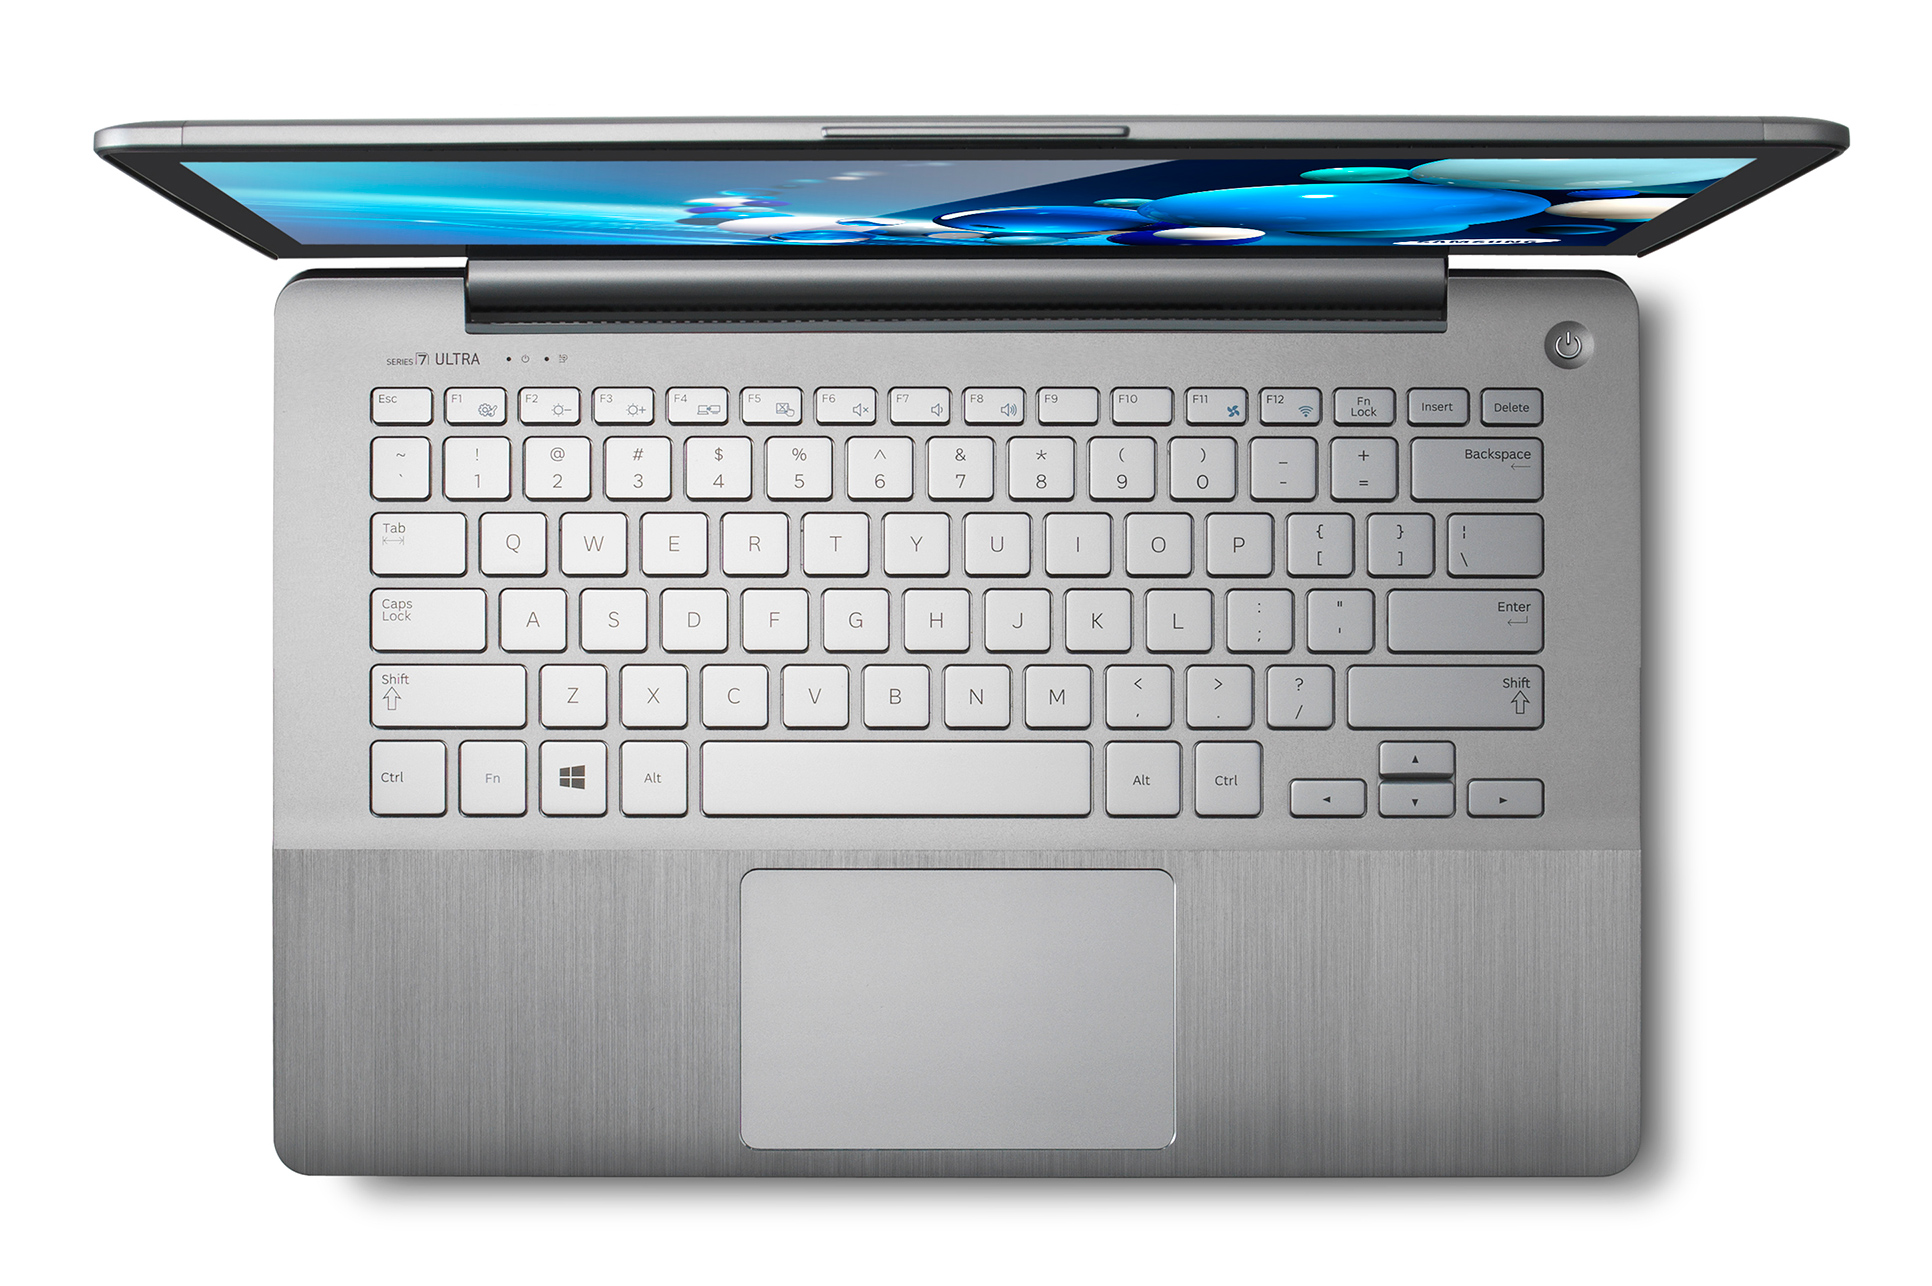 Samsung anuncia novos notebooks Series 7 com touchscreen e Windows 8